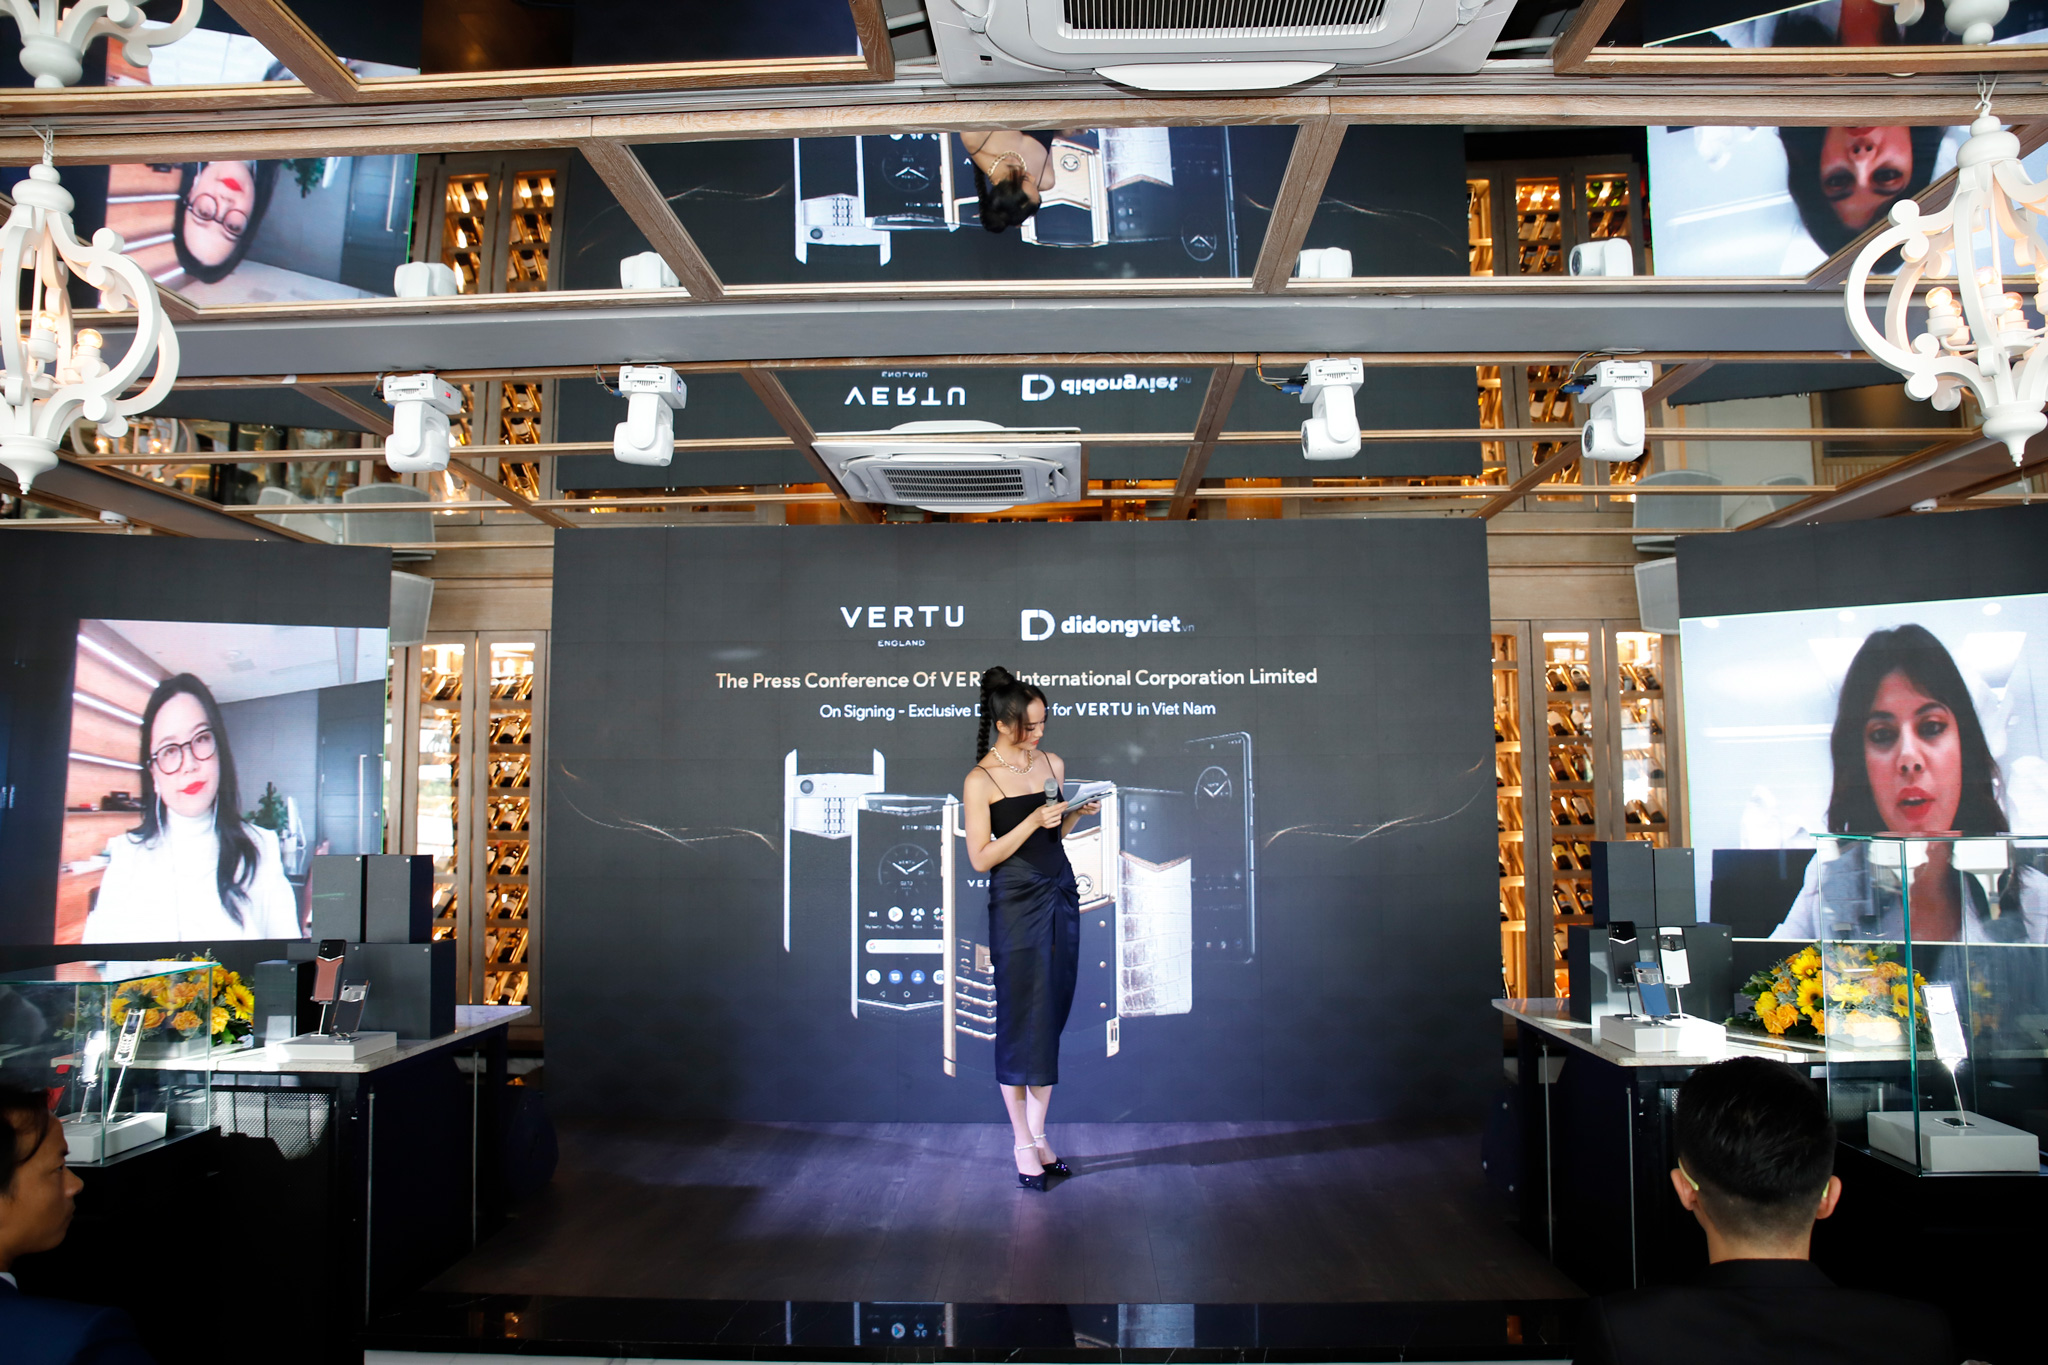 Di Động Việt ký kết hợp tác với Vertu Global, độc quyền phân phối Vertu chính hãng tại Việt Nam